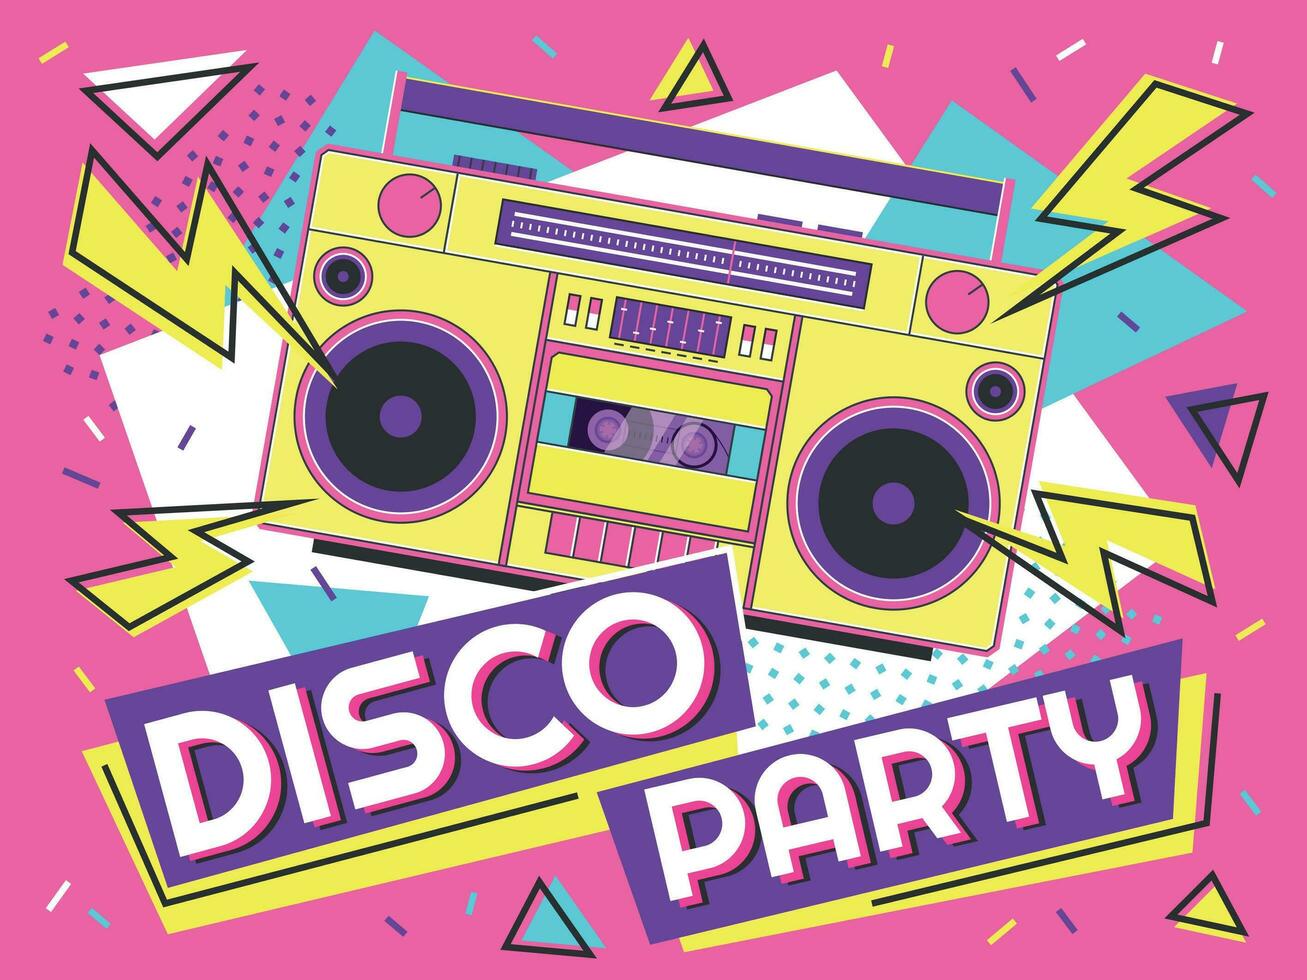 disko fest baner. retro musik affisch, 90s radio och tejp kassett spelare skraj färgrik design vektor bakgrund illustration